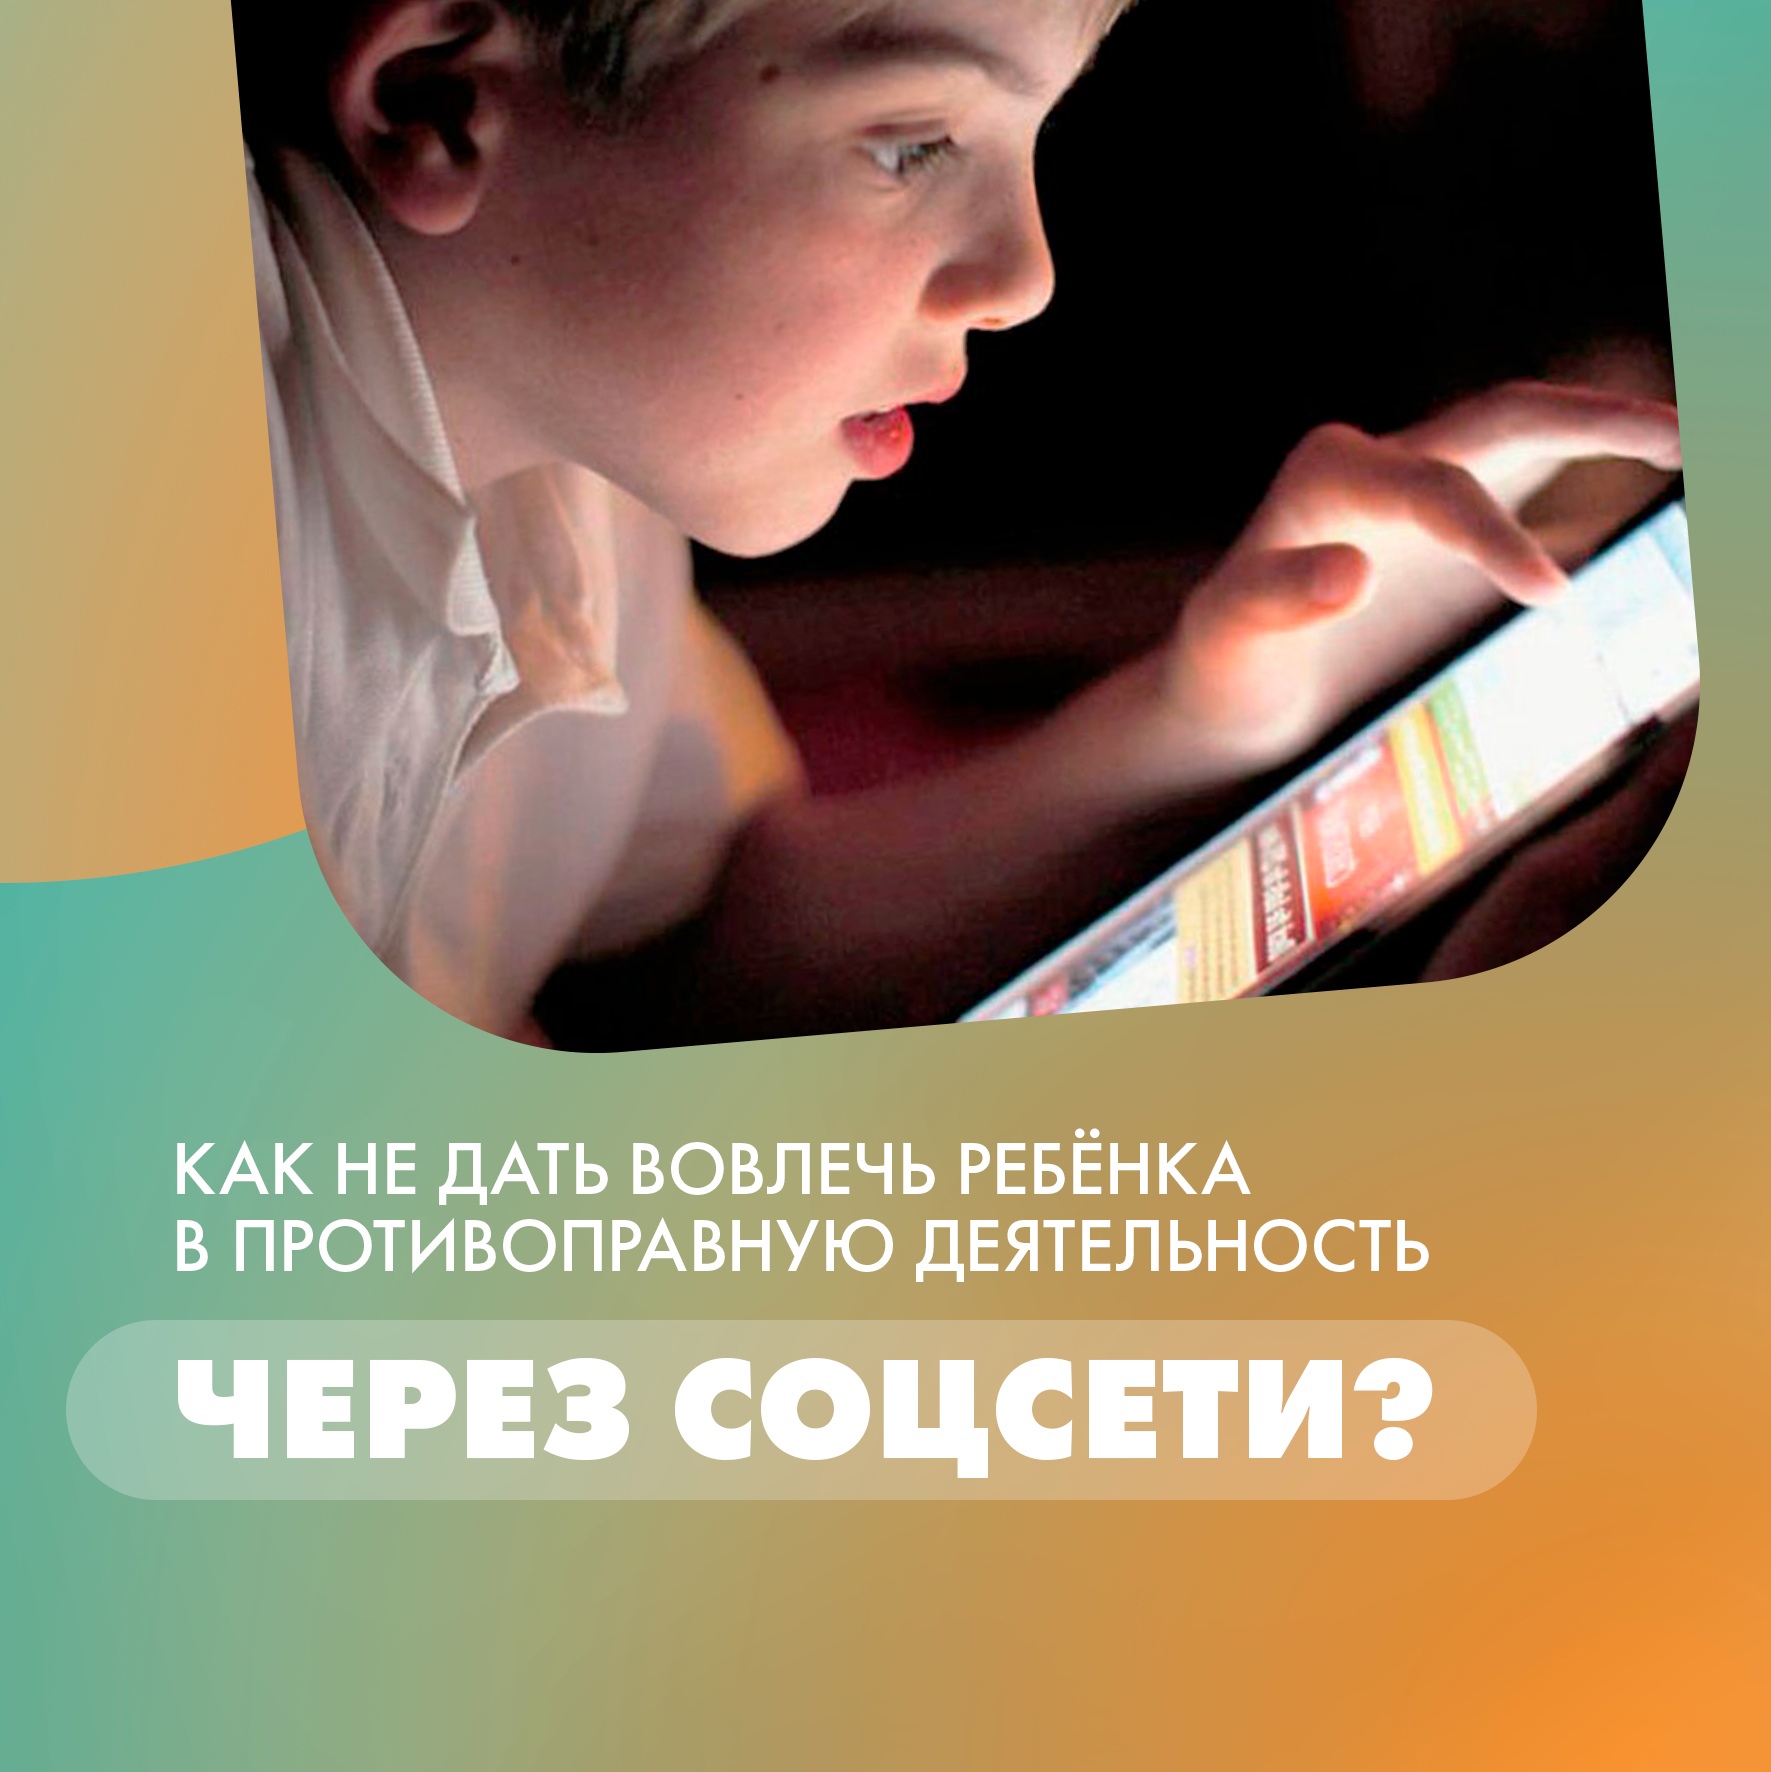 В Минпросвещения РФ рассказали, как действовать, если кто-то присылает угрозы онлайн или пытается вовлечь ребёнка в противоправную деятельность.